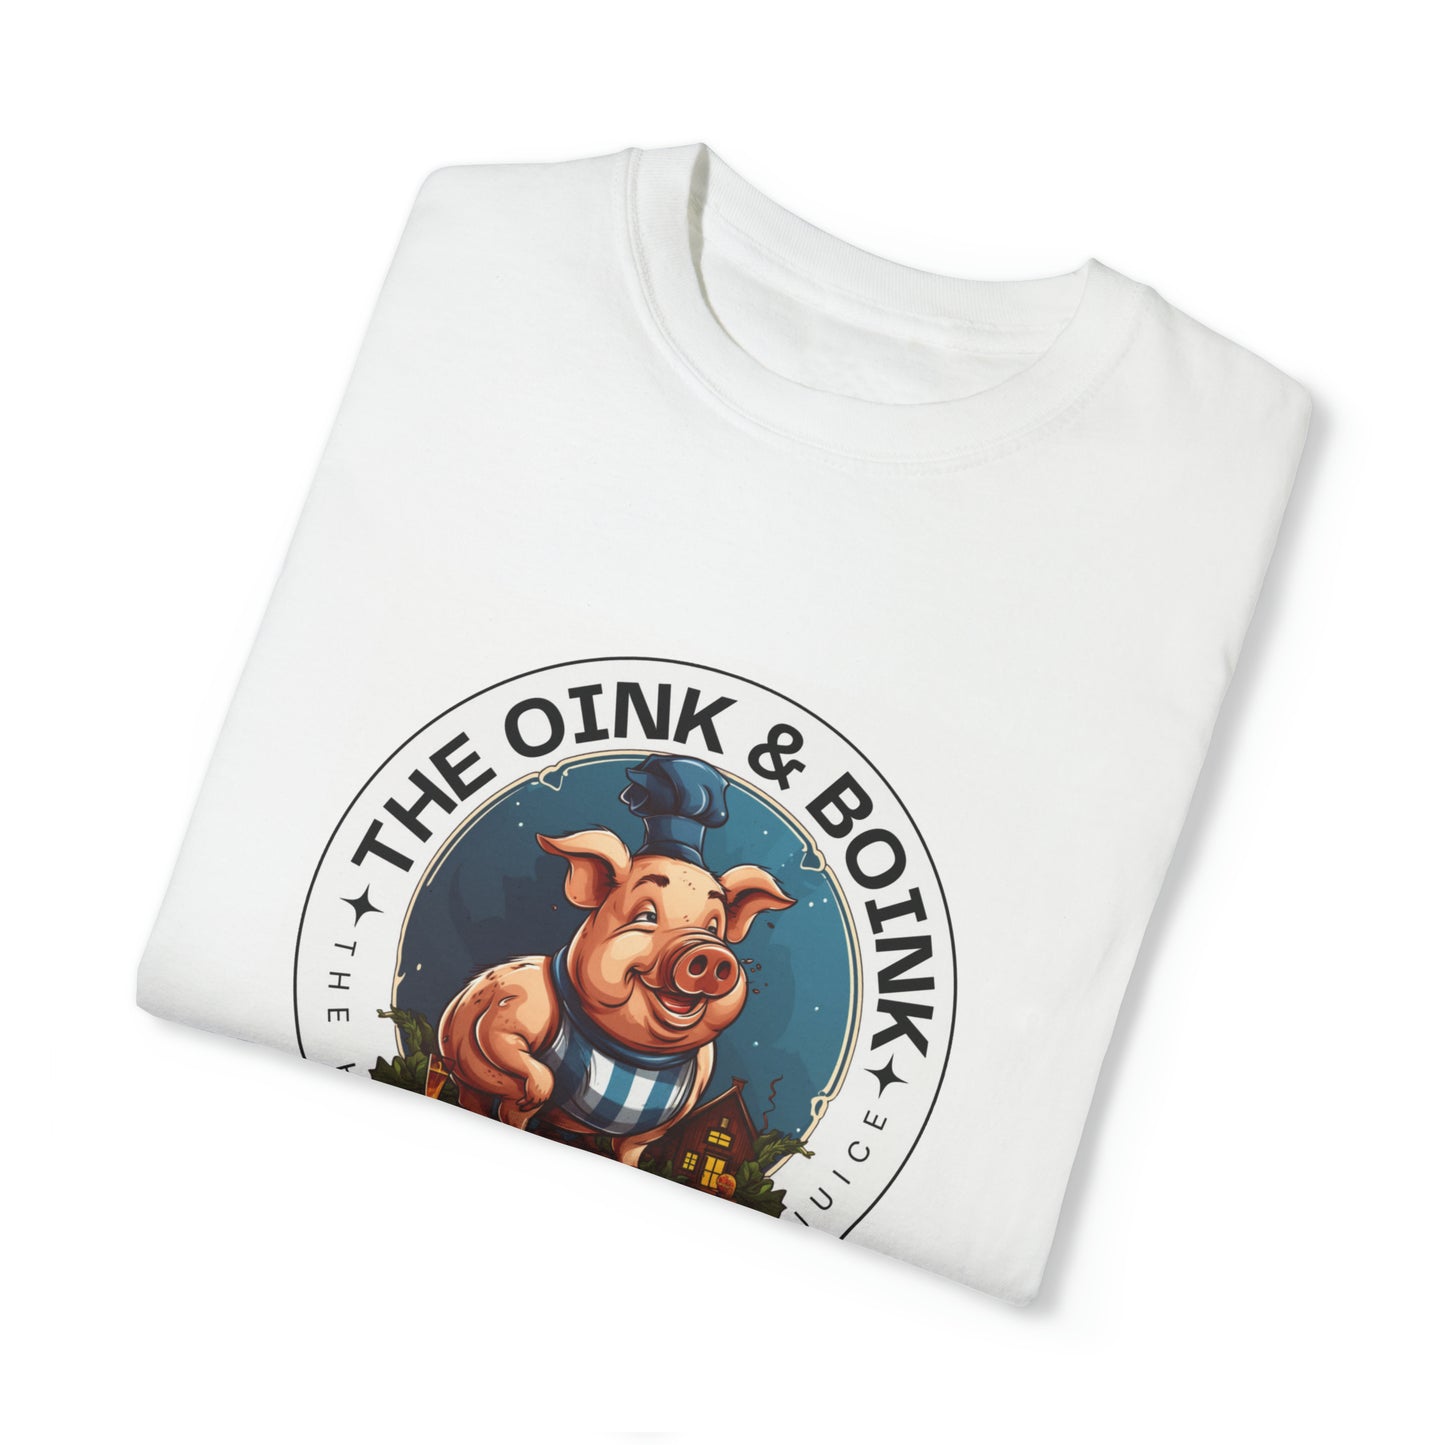 The Oink & Boink Inside Joke Unisex T-Shirt